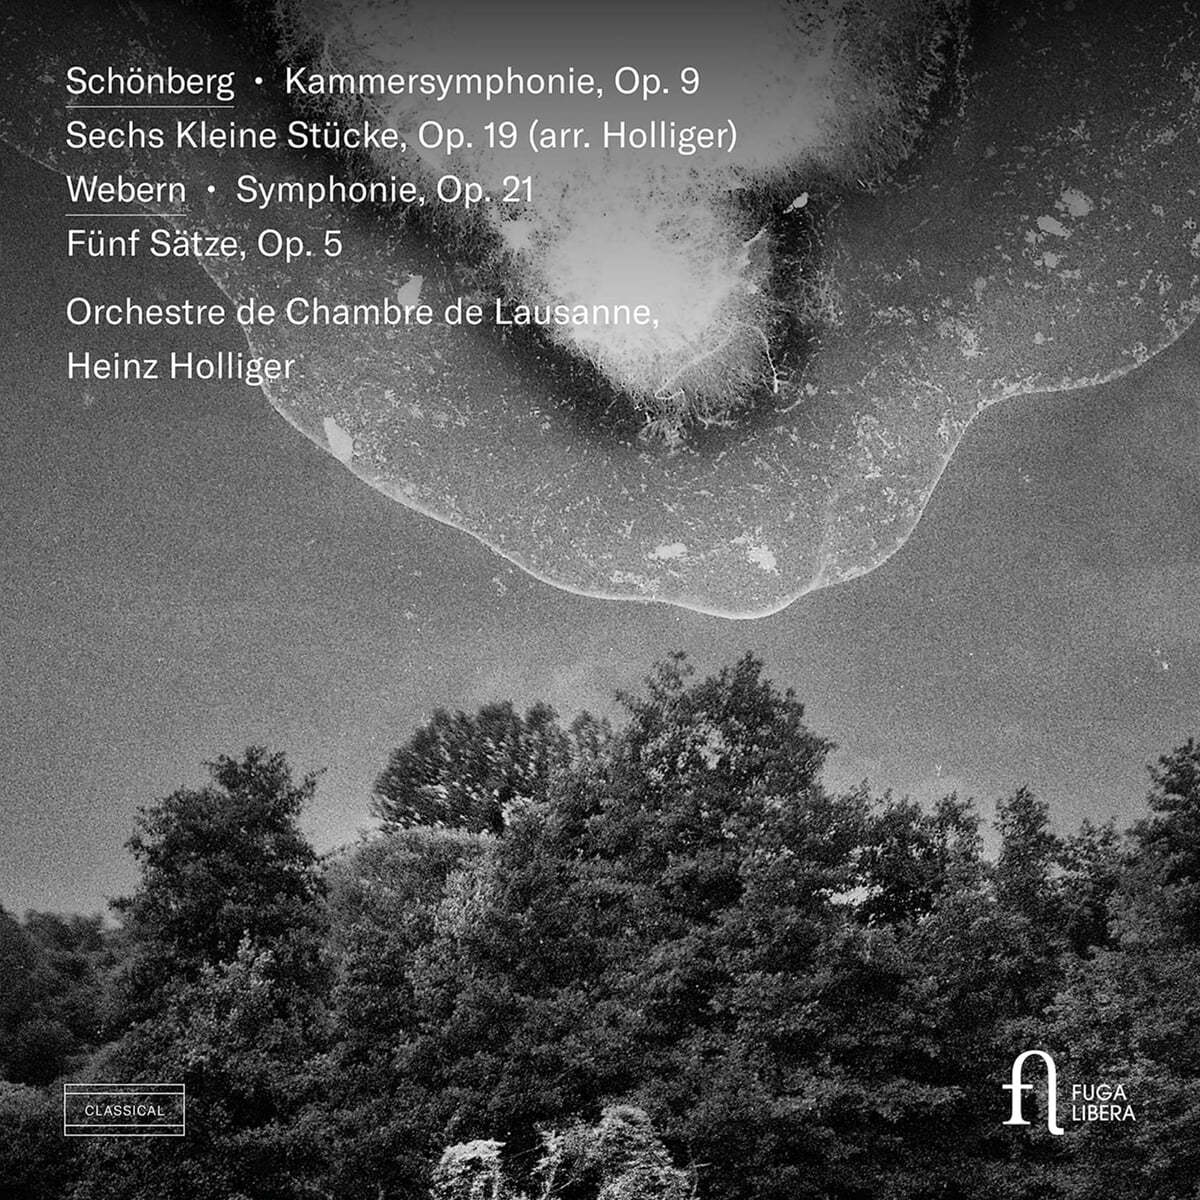 Heinz Holliger 쇤베르크: 실내 교향곡 1번 / 베베른: 교향곡 외 (Schonberg: Kammersymphonie Op. 9, Sechs Kleine Stucke, Op. 19 (Arr. Holliger) / Webern: Symphonie, Op. 21, Funf Satze, Op. 5)